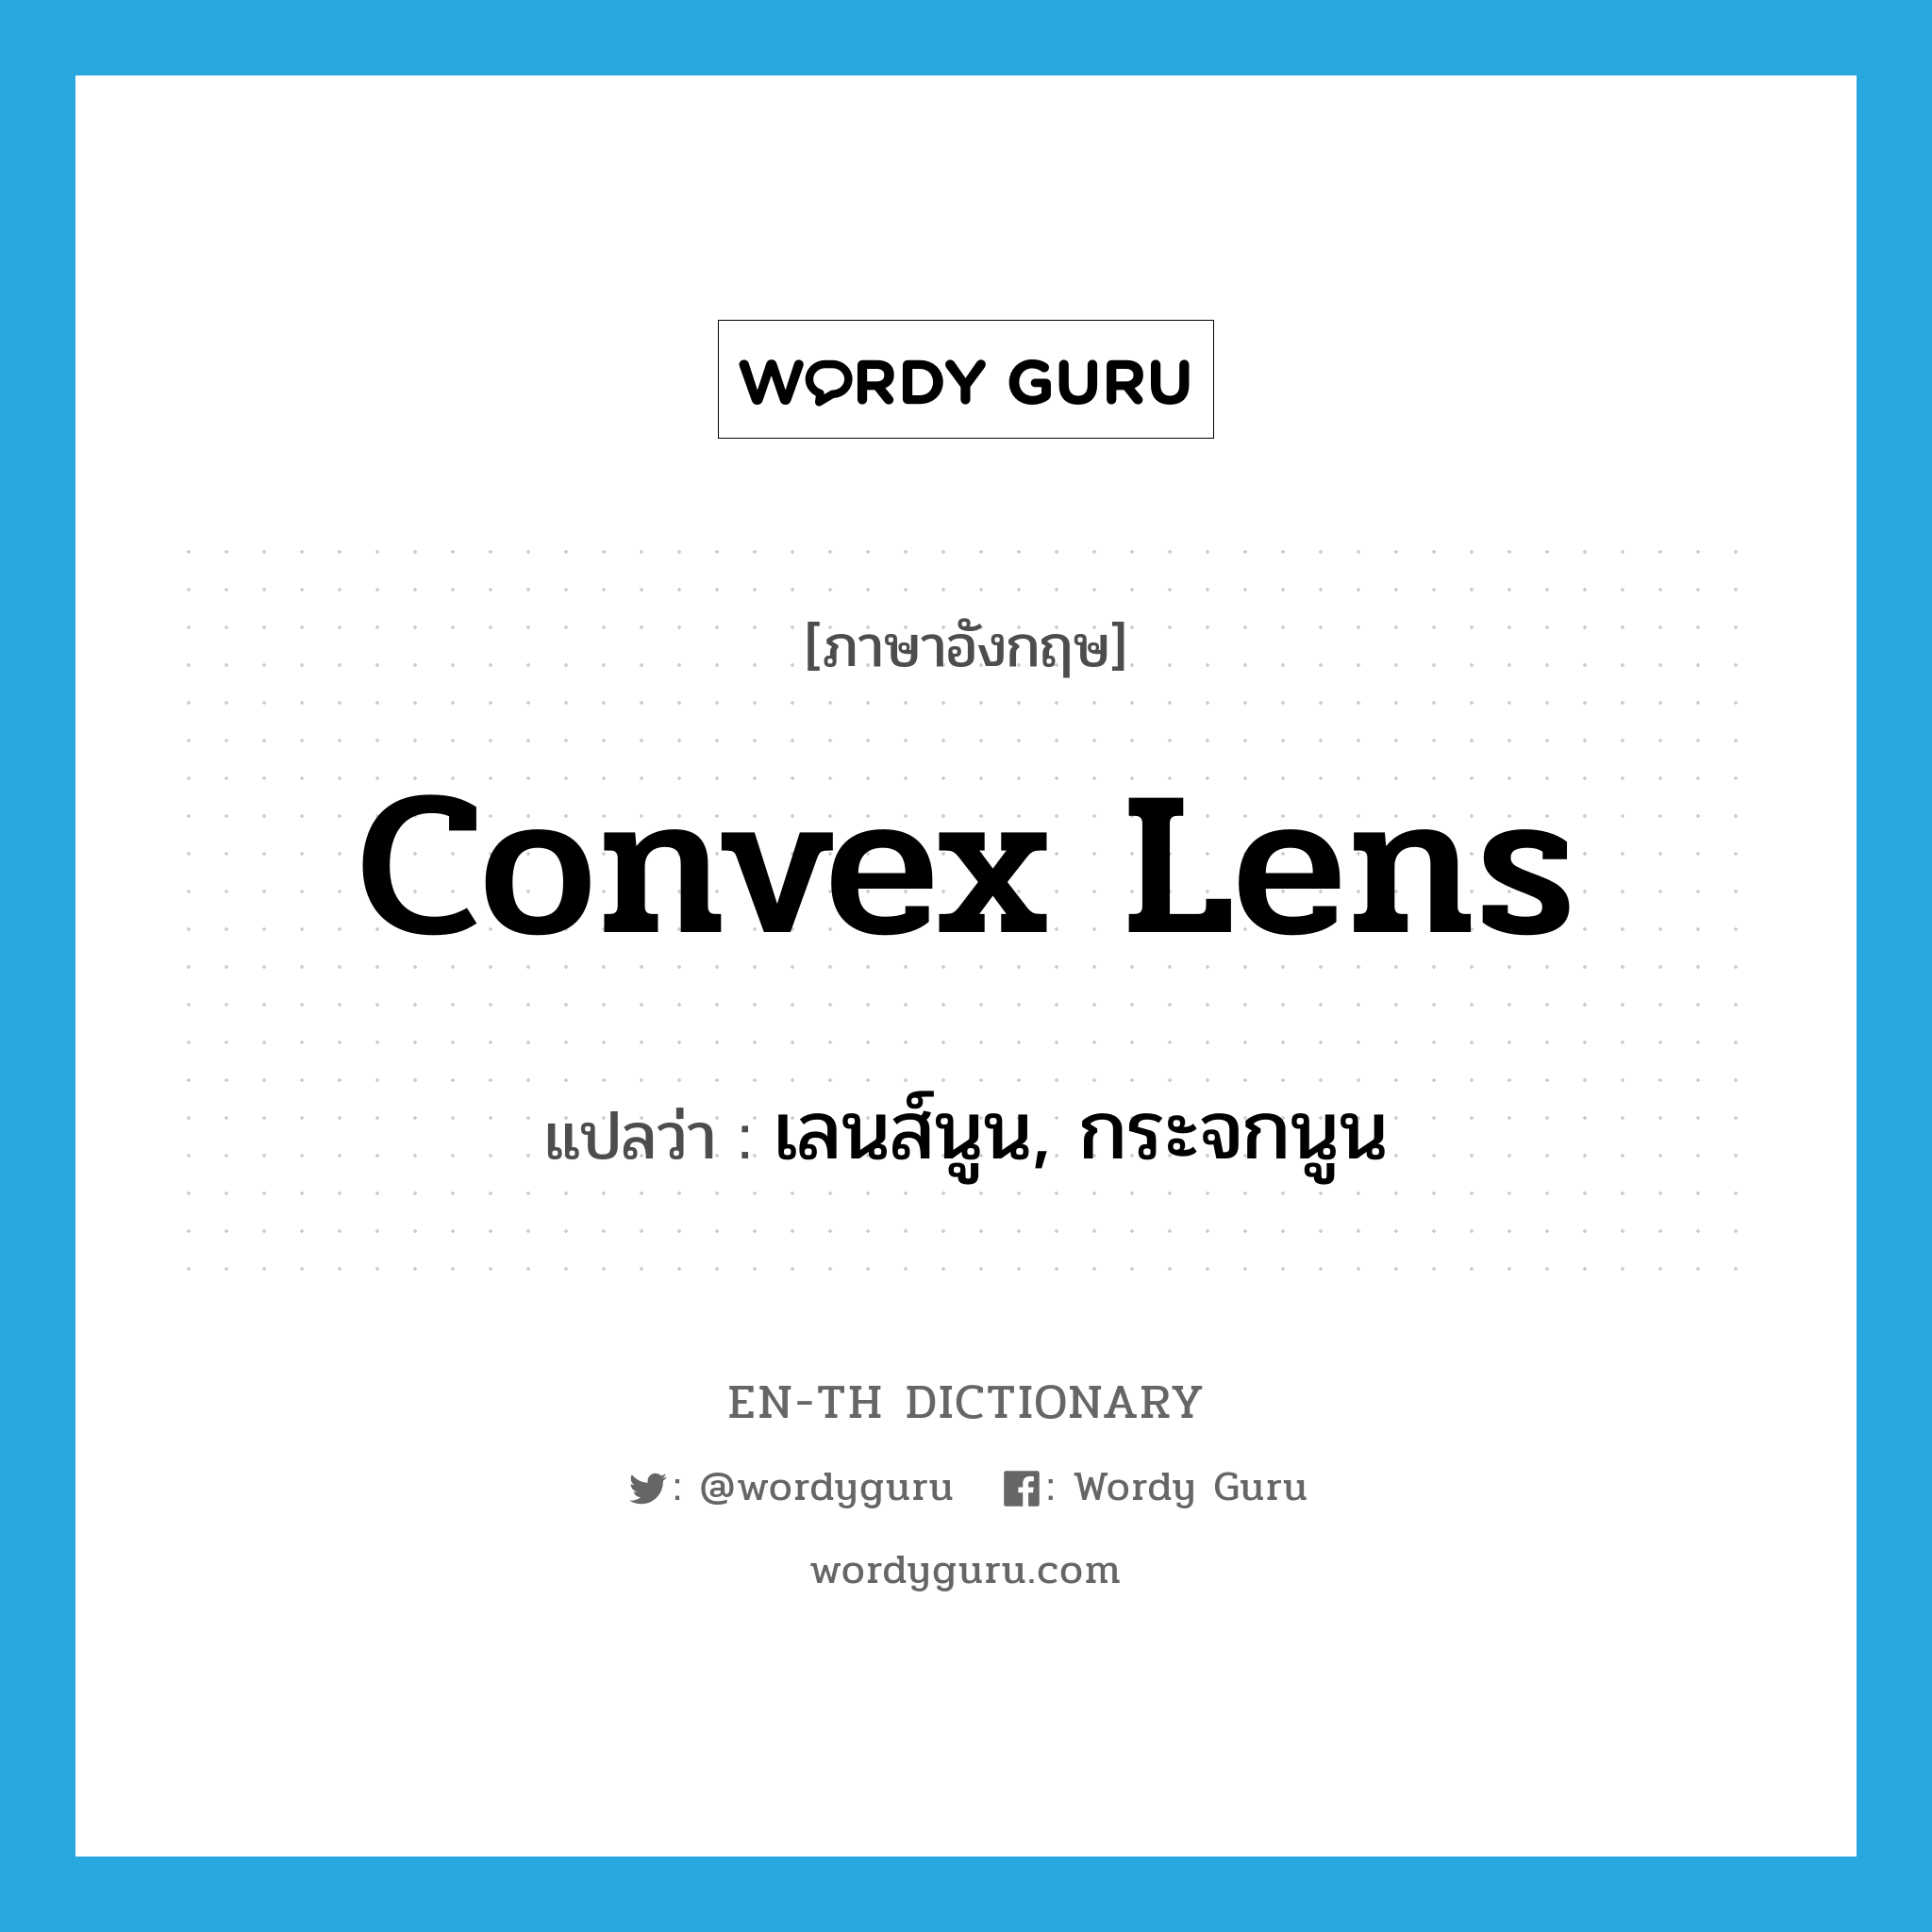 เลนส์นูน, กระจกนูน ภาษาอังกฤษ?, คำศัพท์ภาษาอังกฤษ เลนส์นูน, กระจกนูน แปลว่า convex lens ประเภท N หมวด N